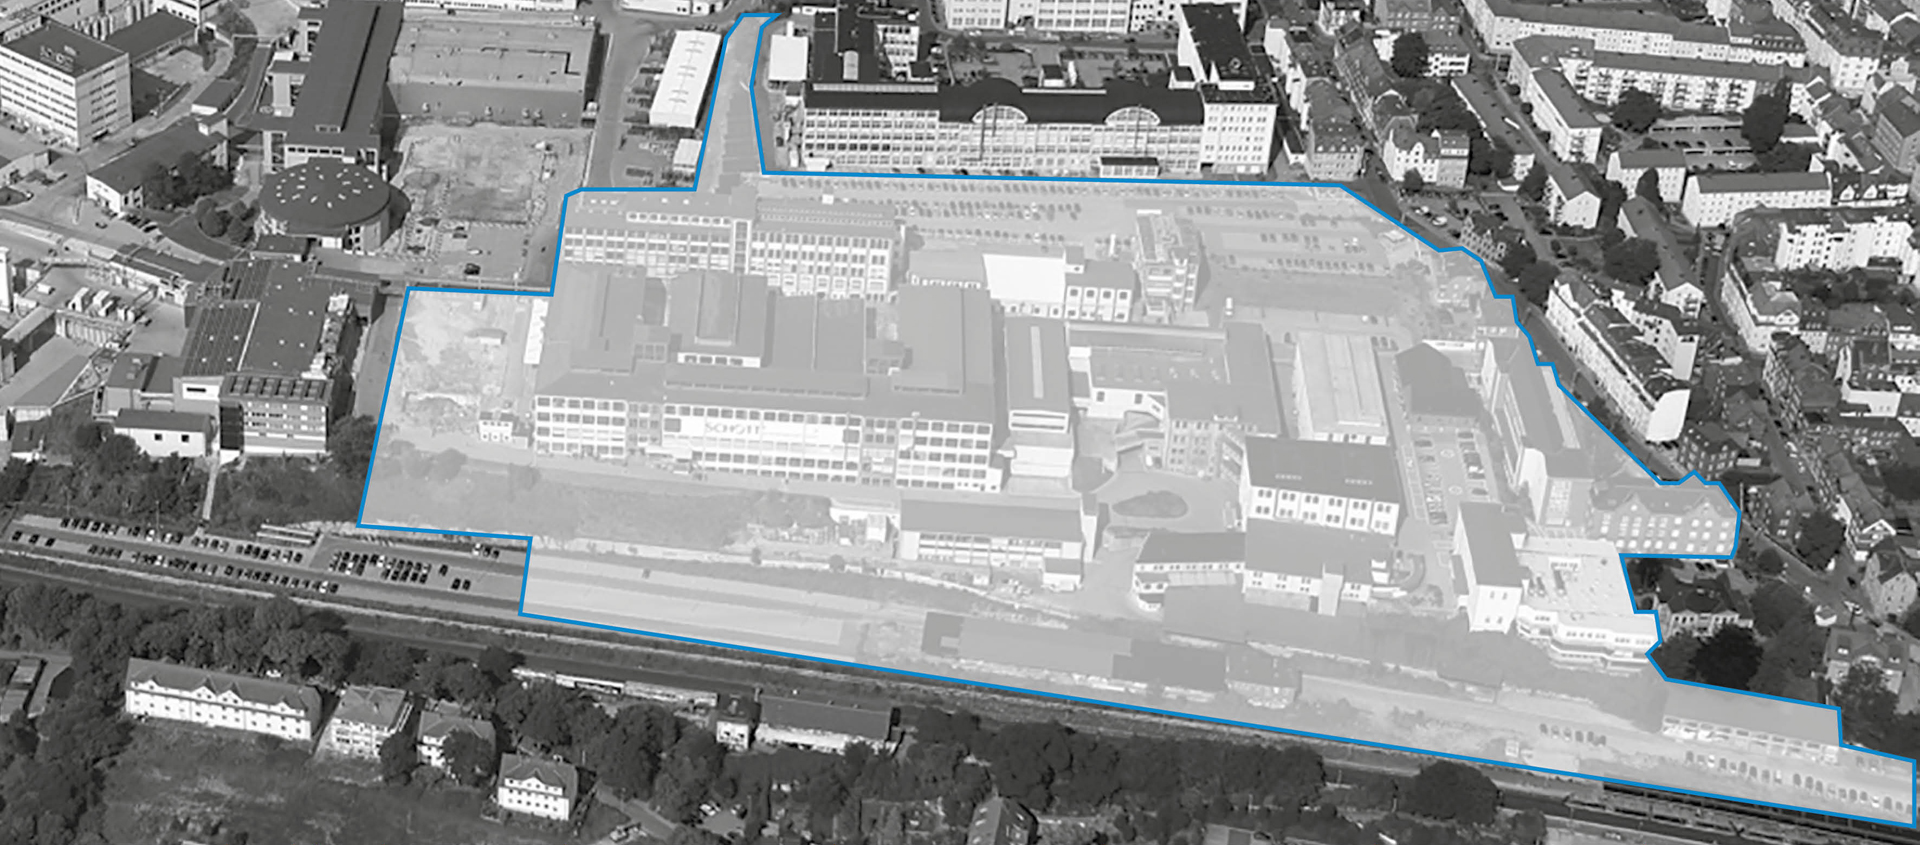 ZEISS Hightech-Standort: Areal für Neubau 